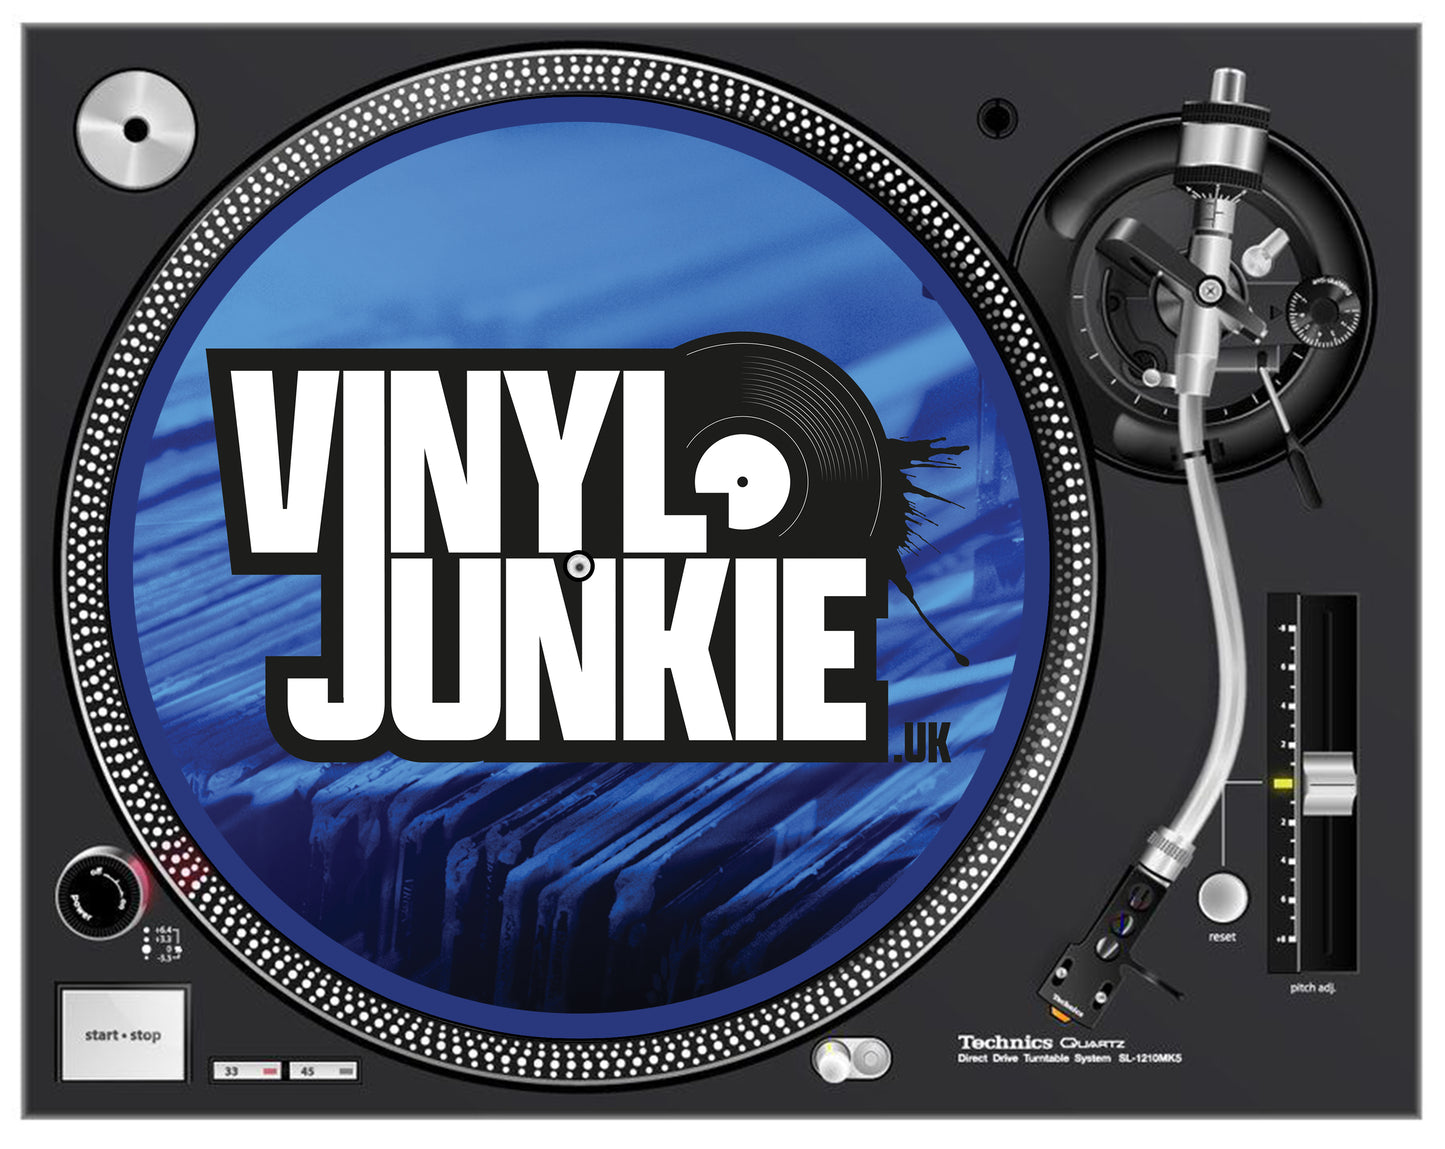 Vinyl Junkie UK Slipmatts (Pair) - Vinyl Junkie UK - The place for vinyl and slipmats